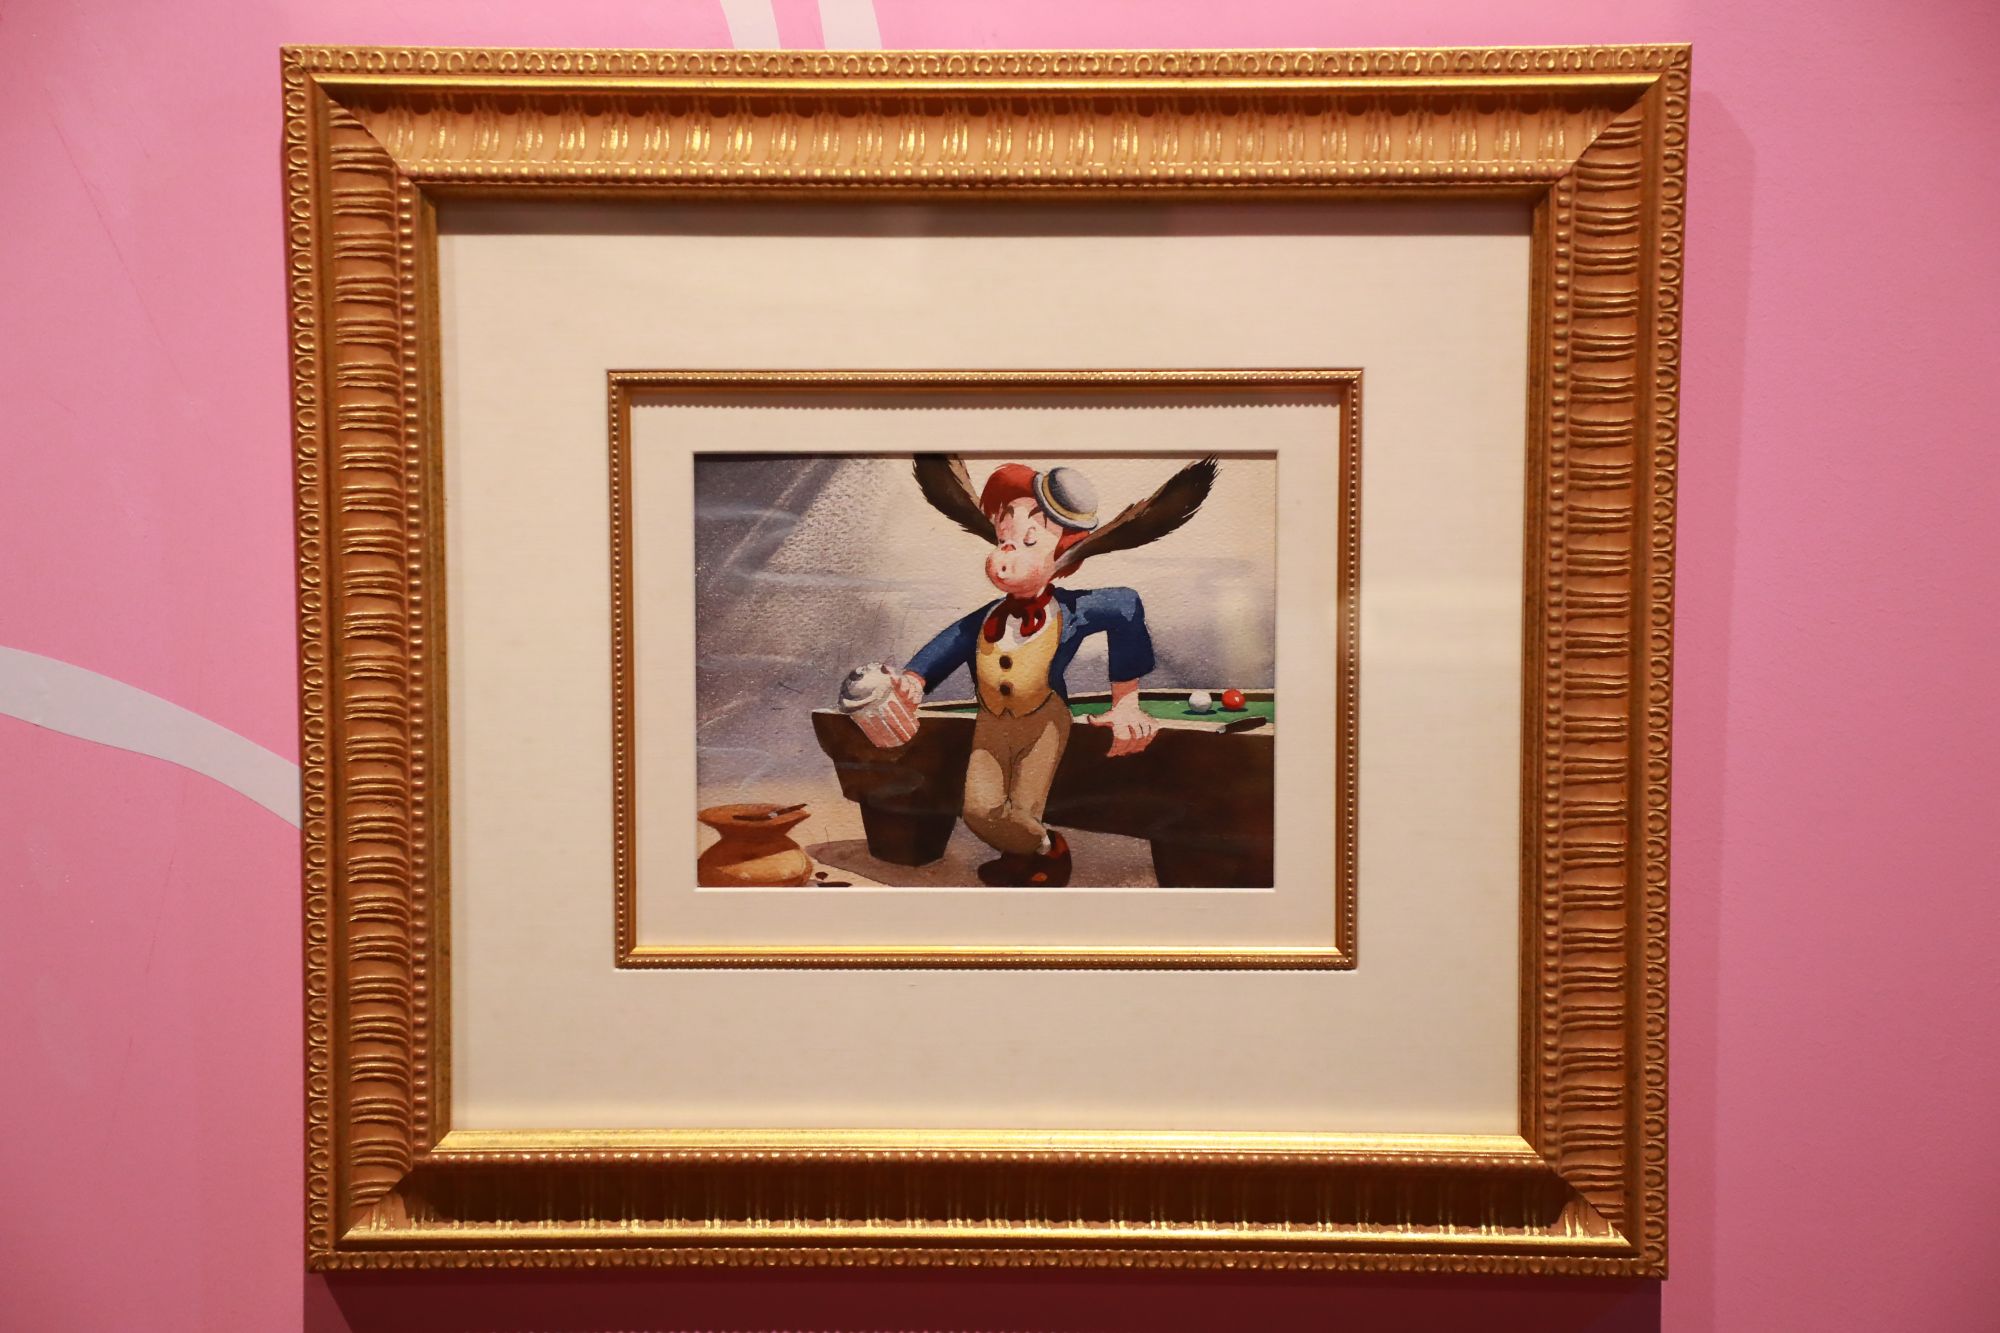 《木偶奇遇记》手绘概念艺术制作 原画 美国 1939年 华特迪士尼公司出品